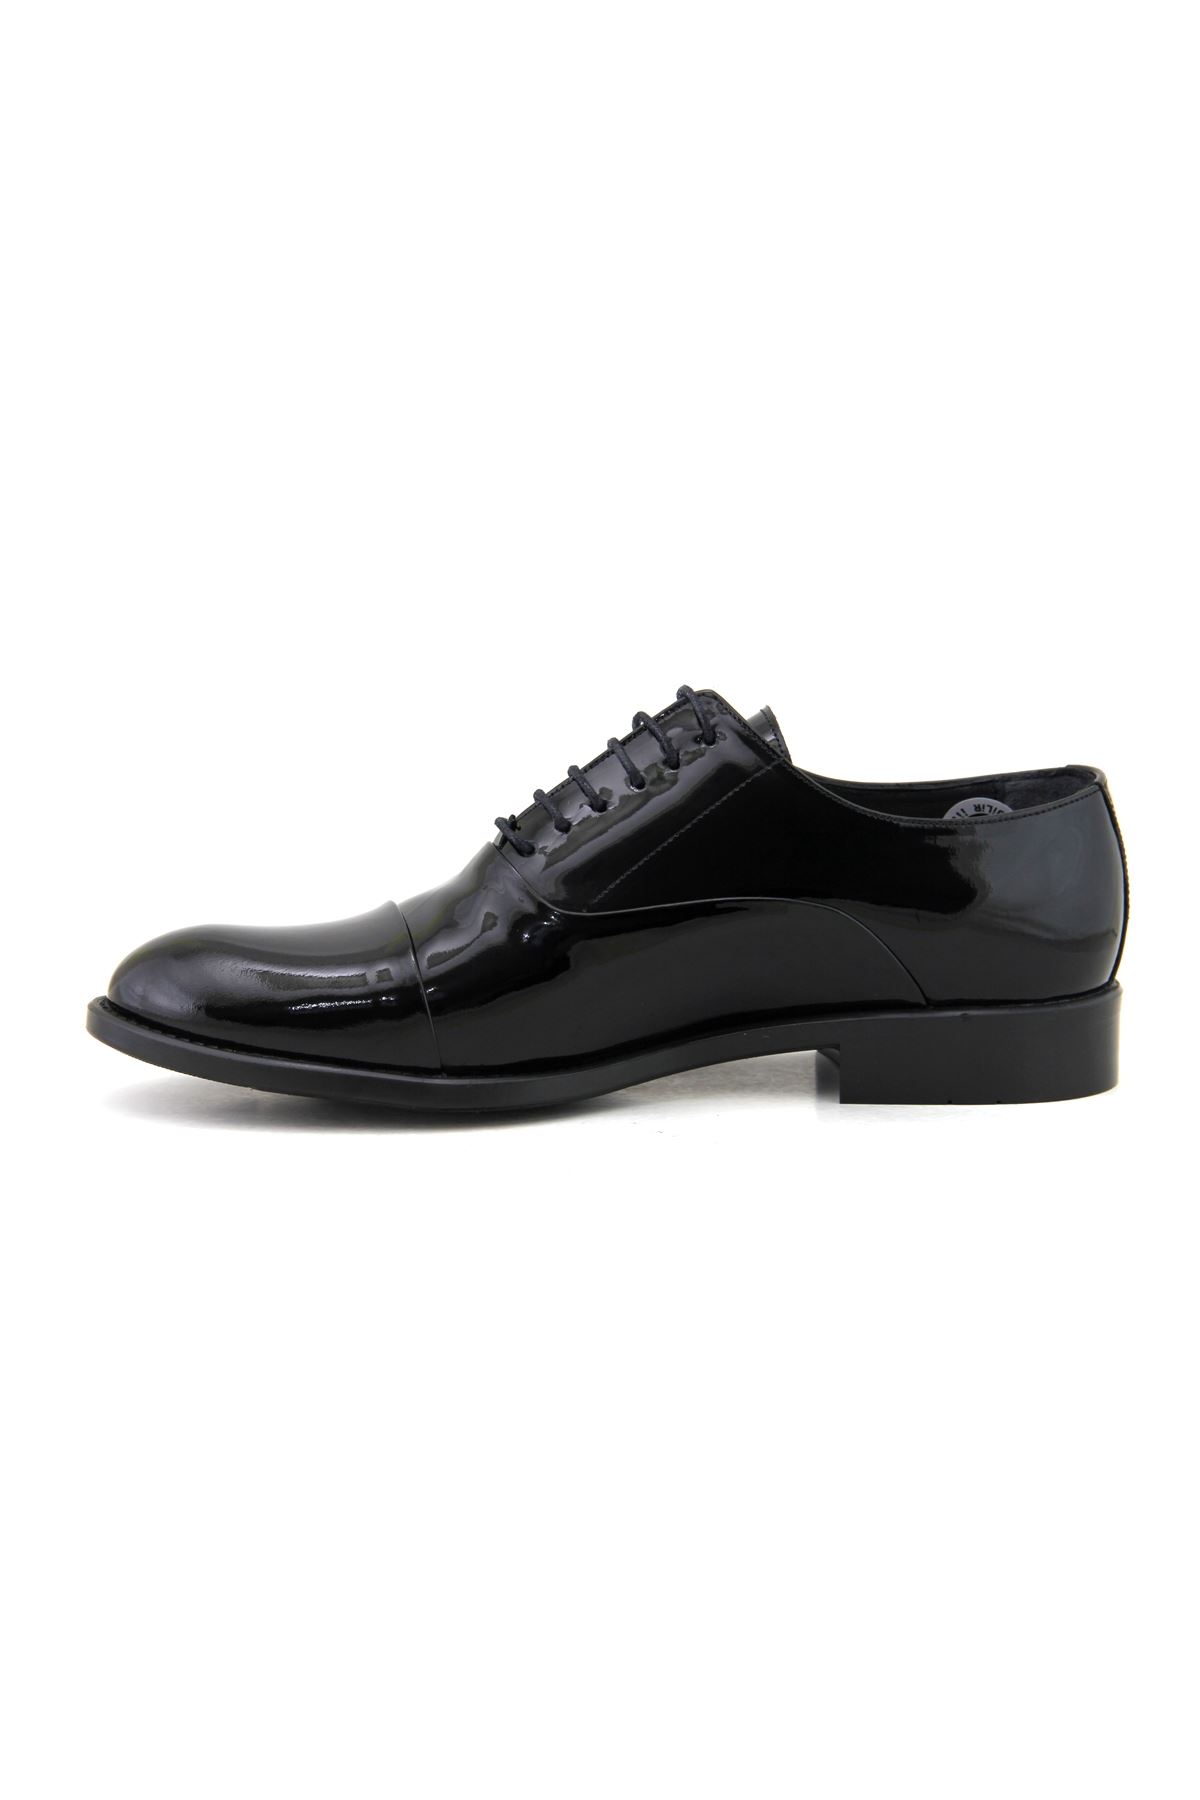 Fosco 7102 Hakiki Deri Klasik Erkek Ayakkabı - Siyah Rugan